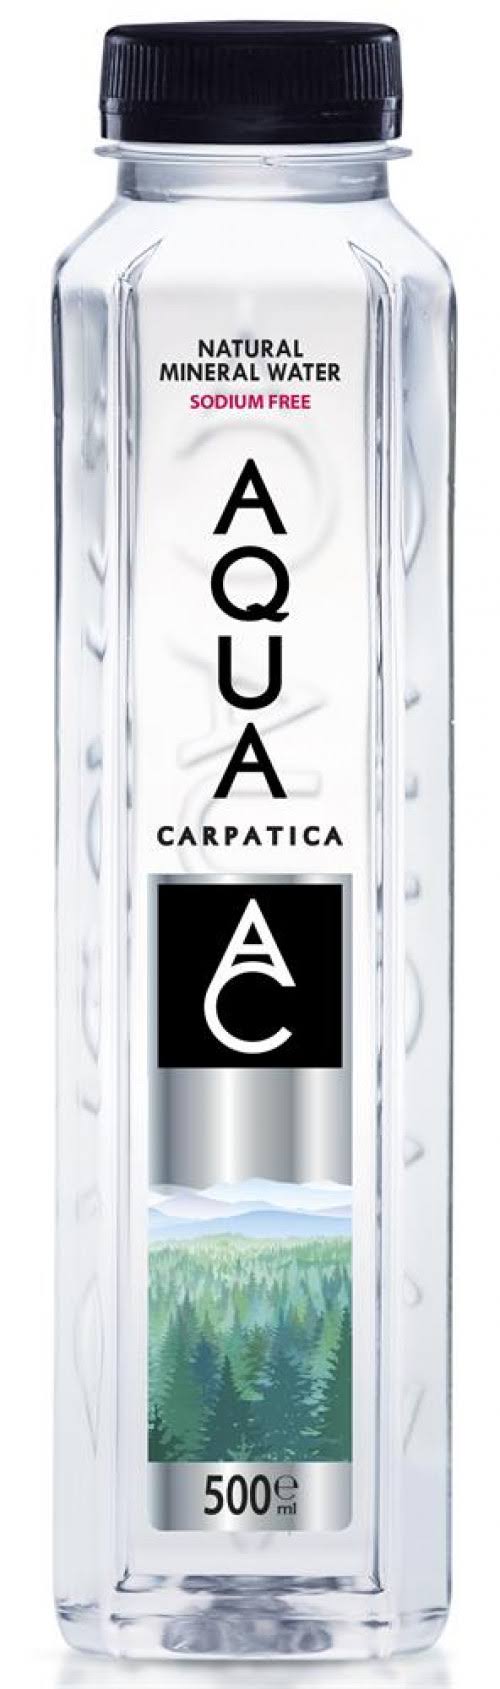 Aqua Carpatica Natural Mineral Water - 500ml